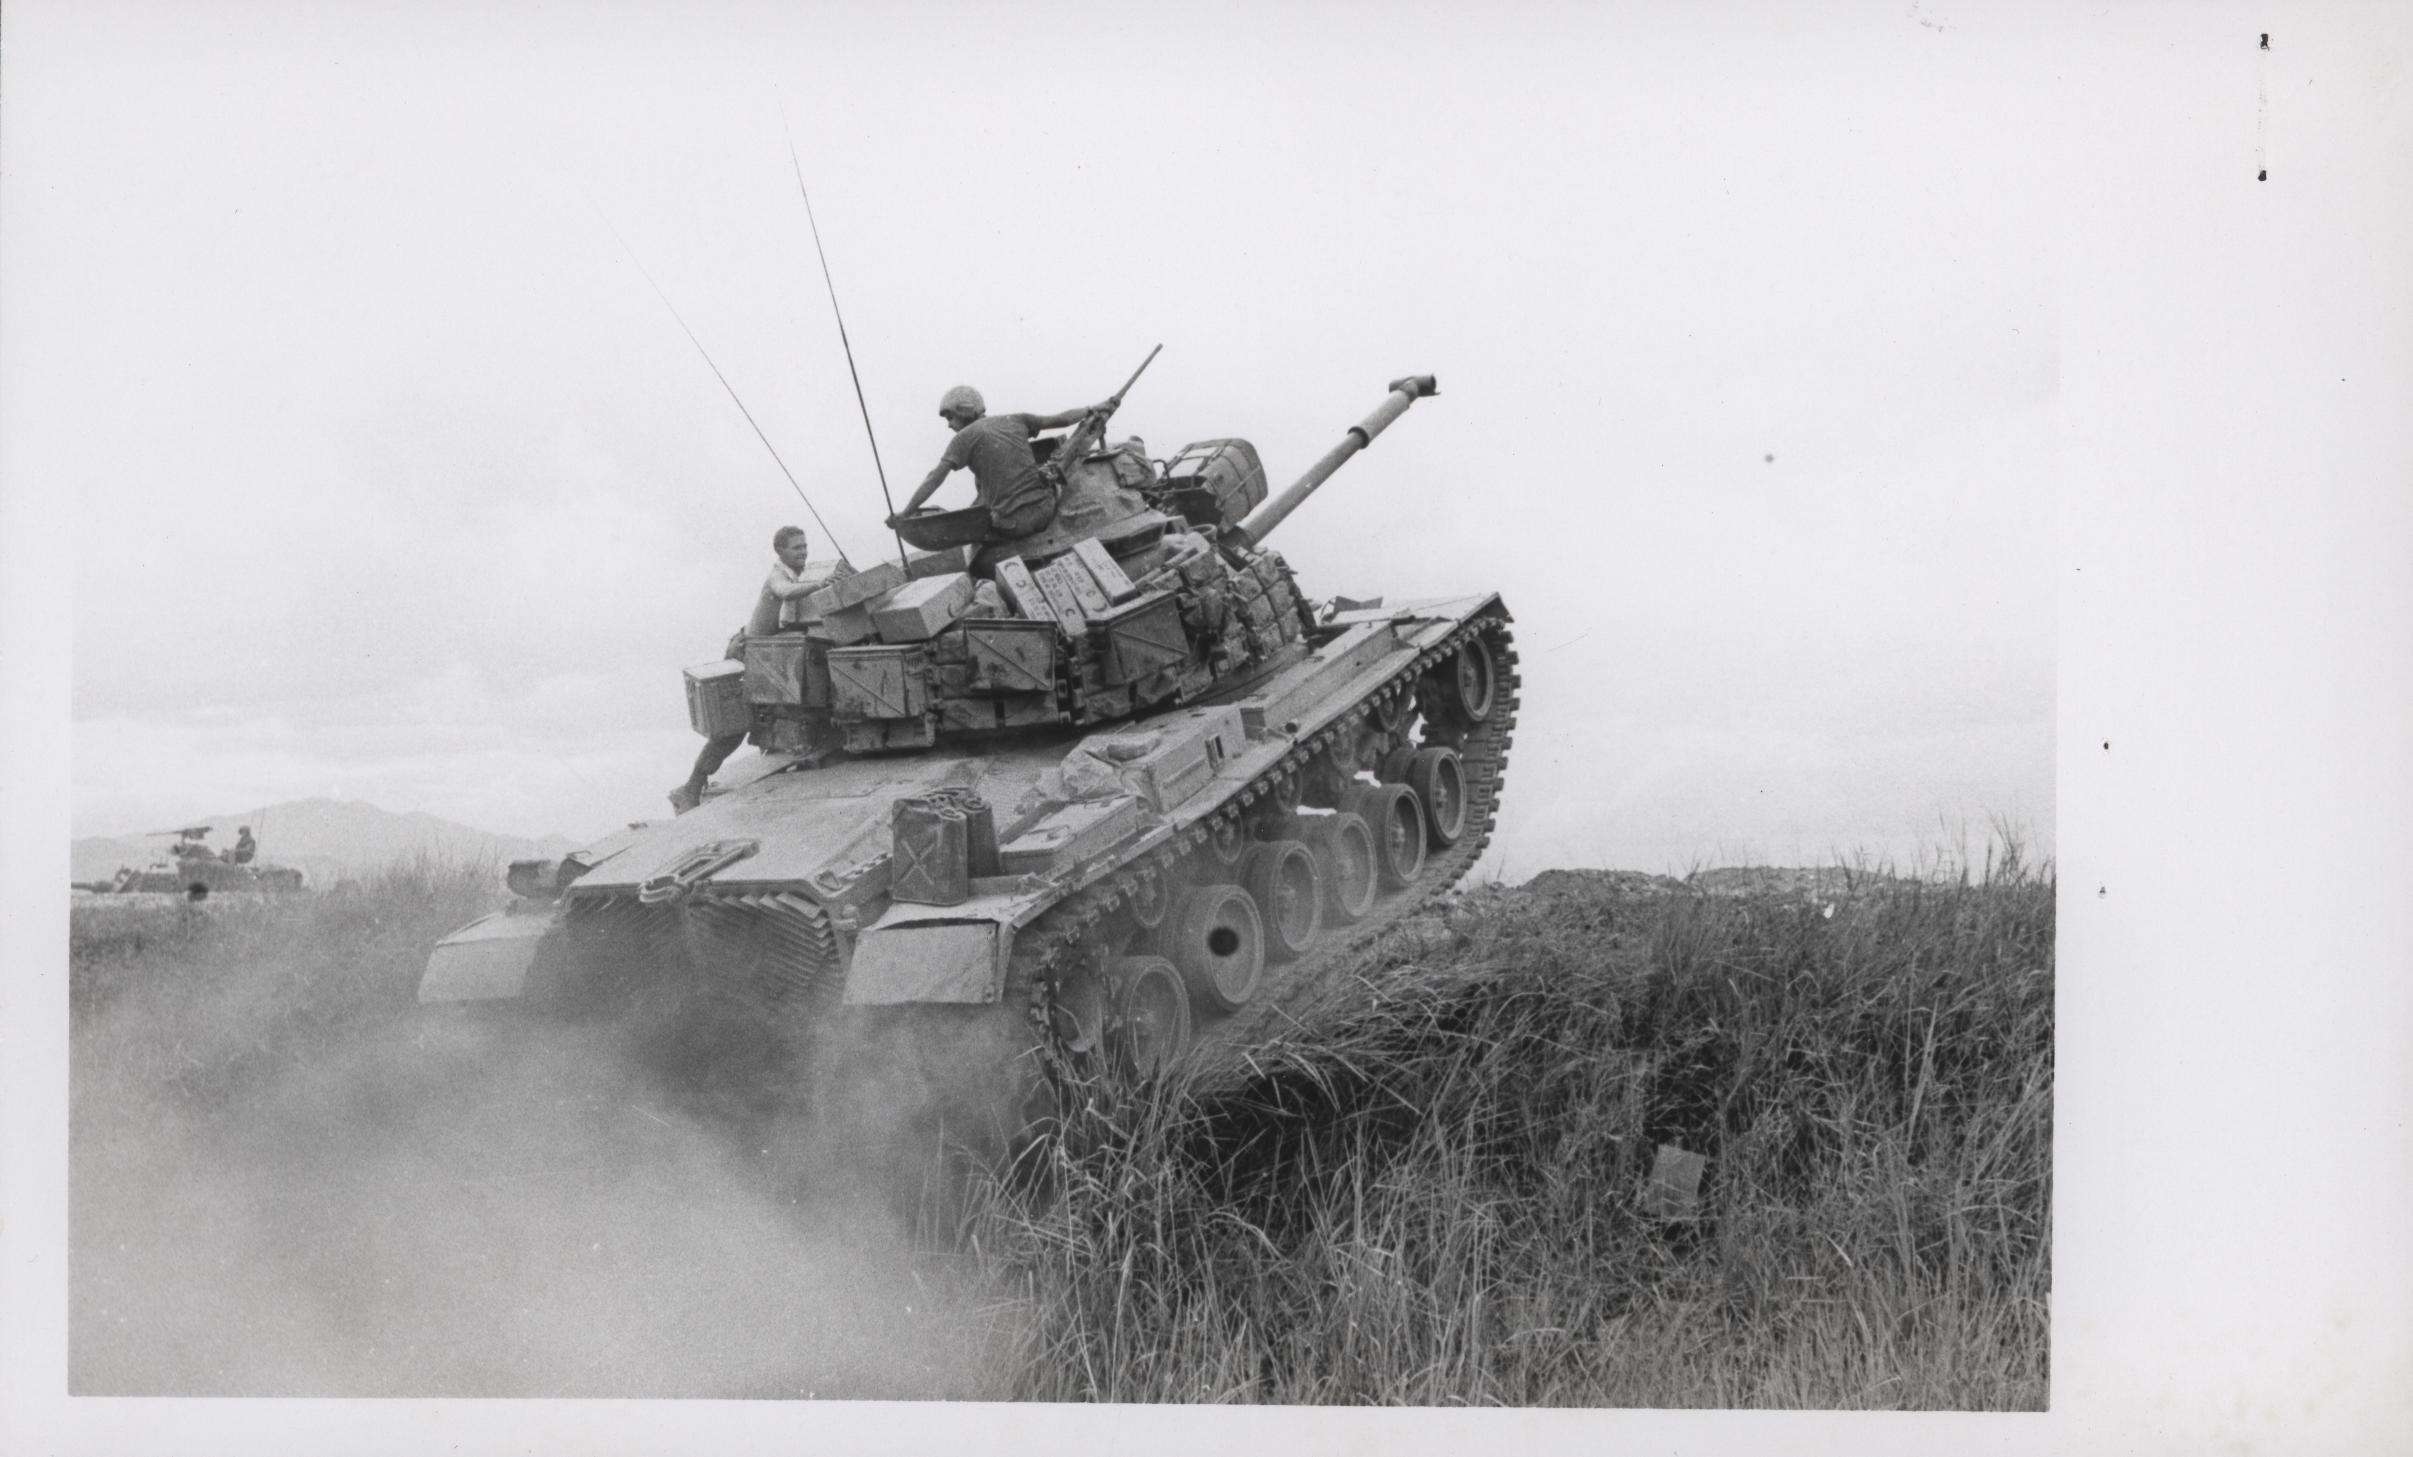 An M48 Patton in Vietnam.